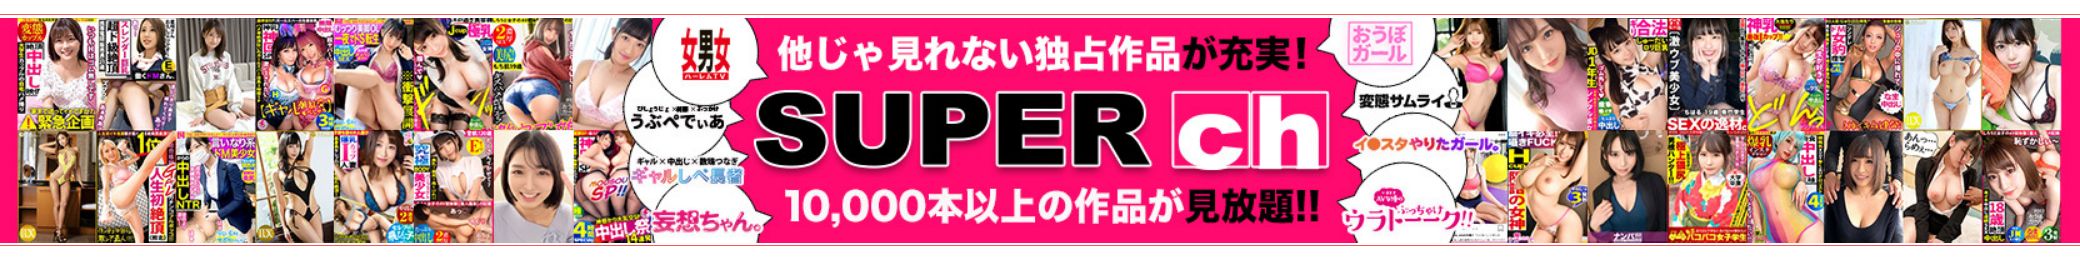 SUPER ch